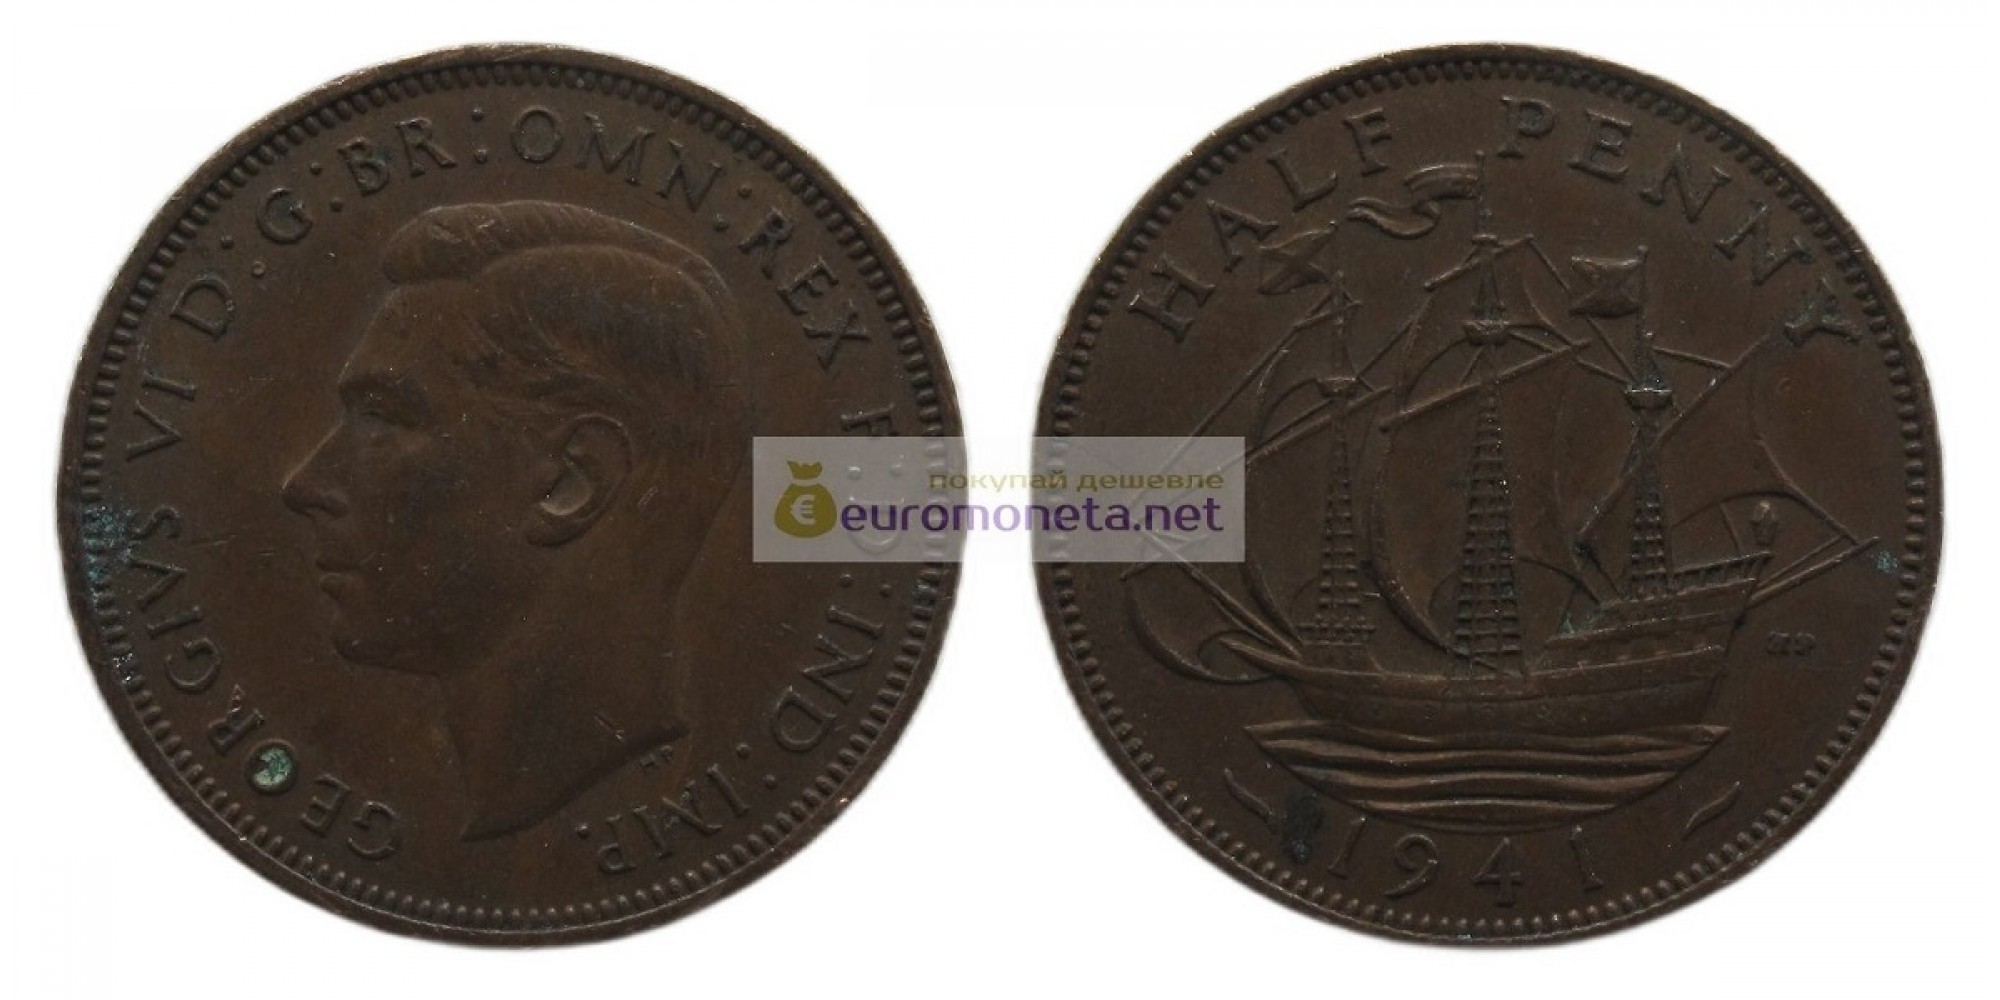 Великобритания 1/2 пенни (полпенни) 1941 год. Король Георг VI